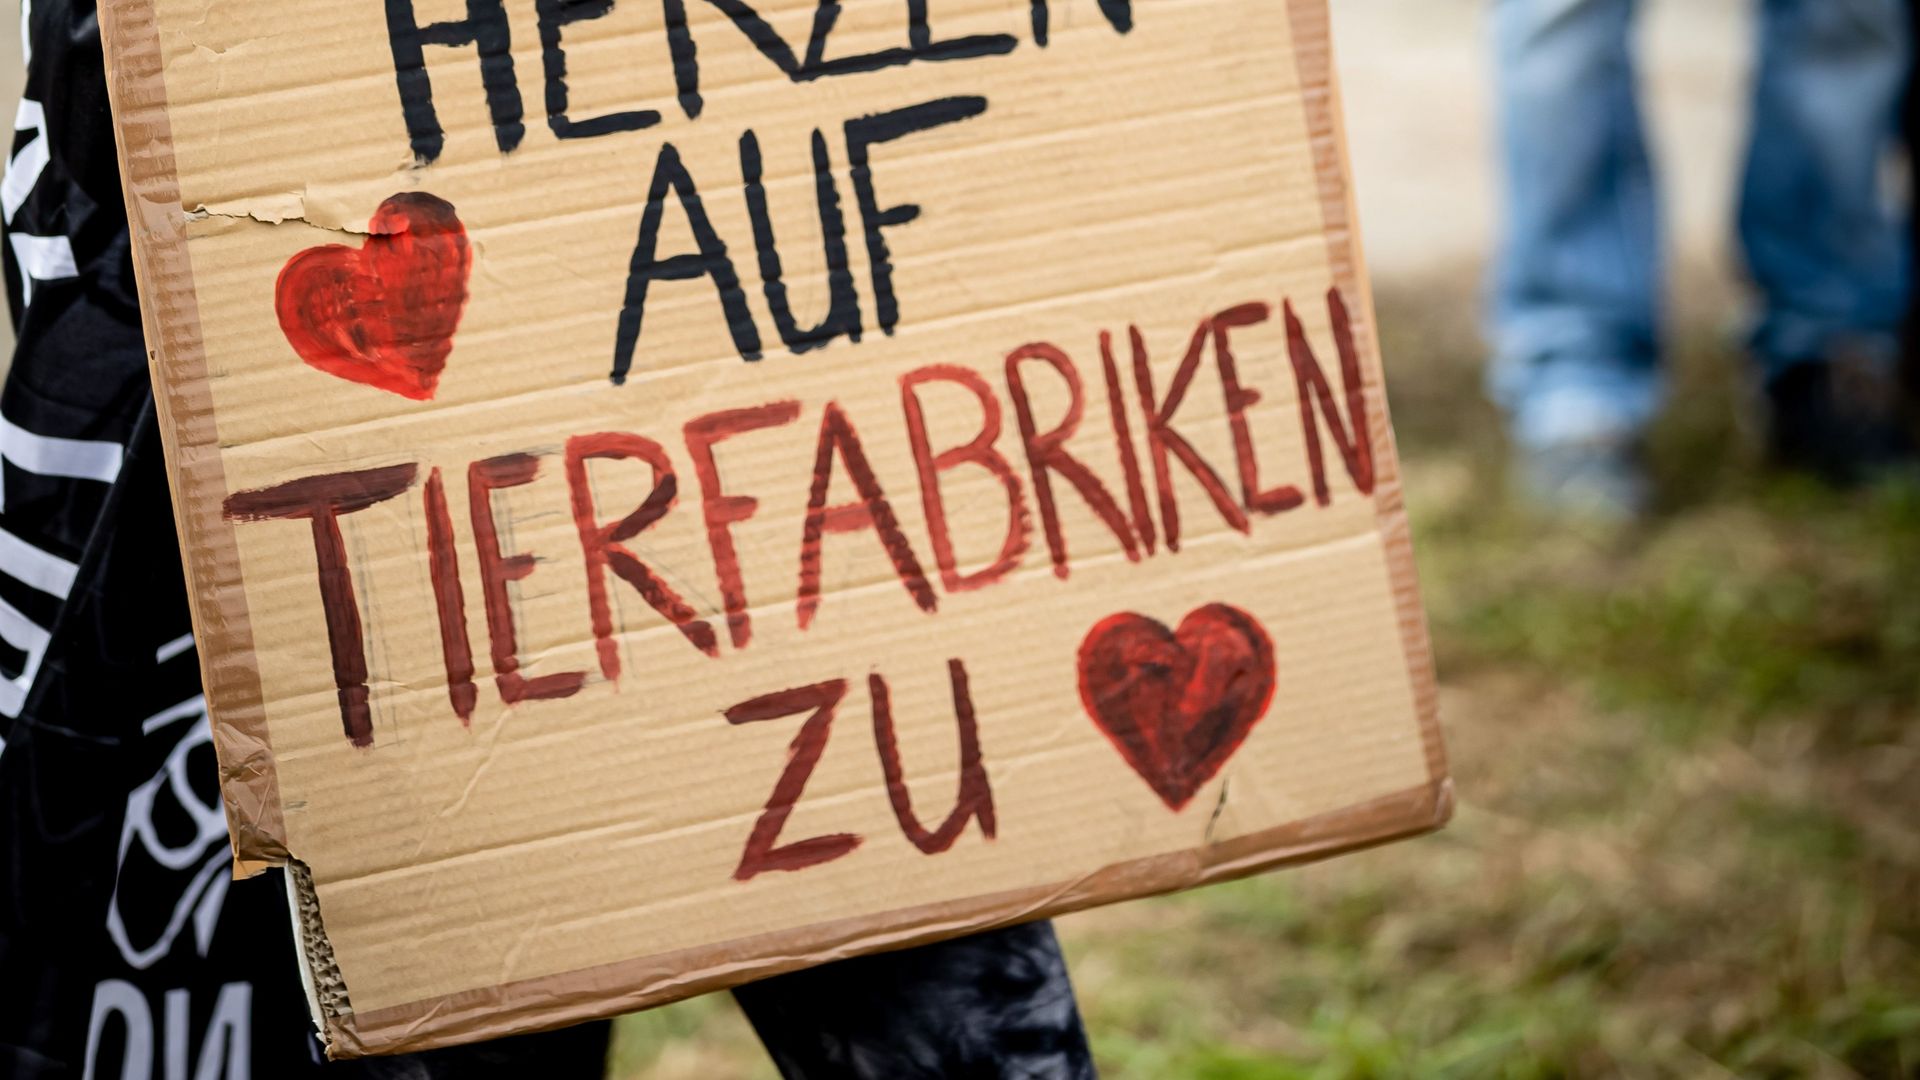 Demonstrationsschild "Herzen auf - Tierfabriken zu"